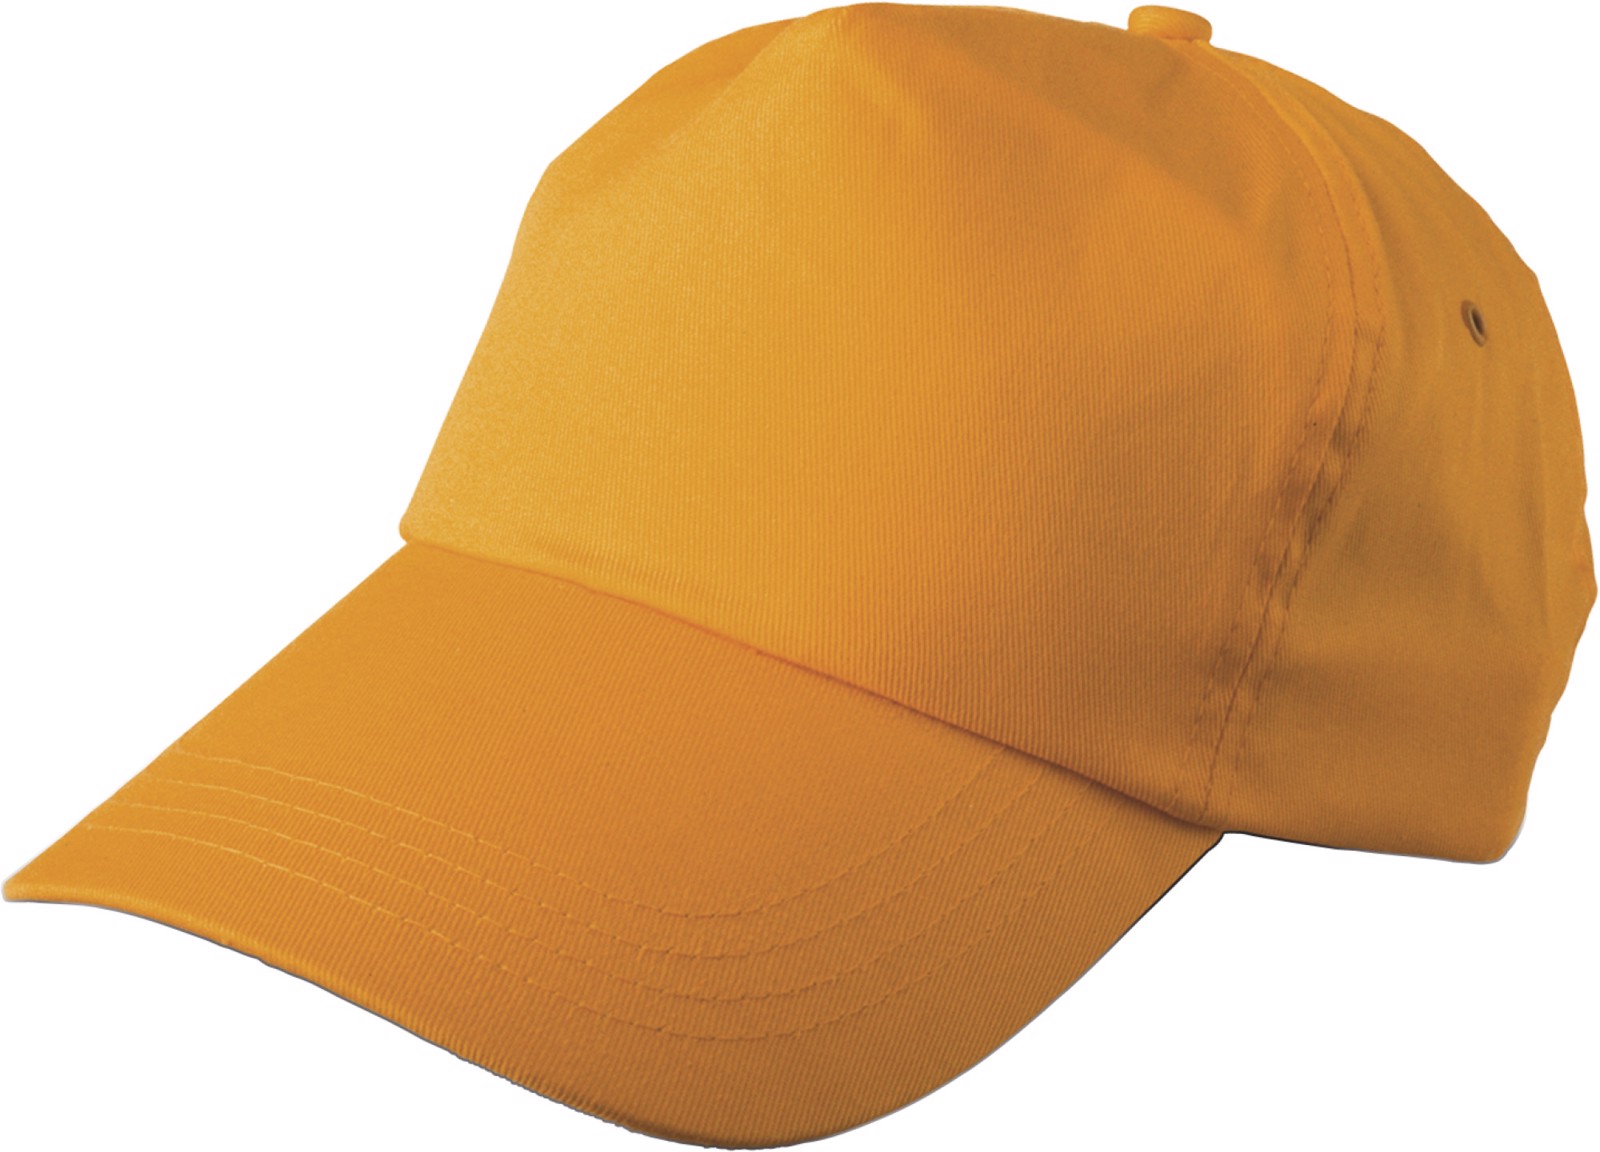 Cotton twill cap - Orange